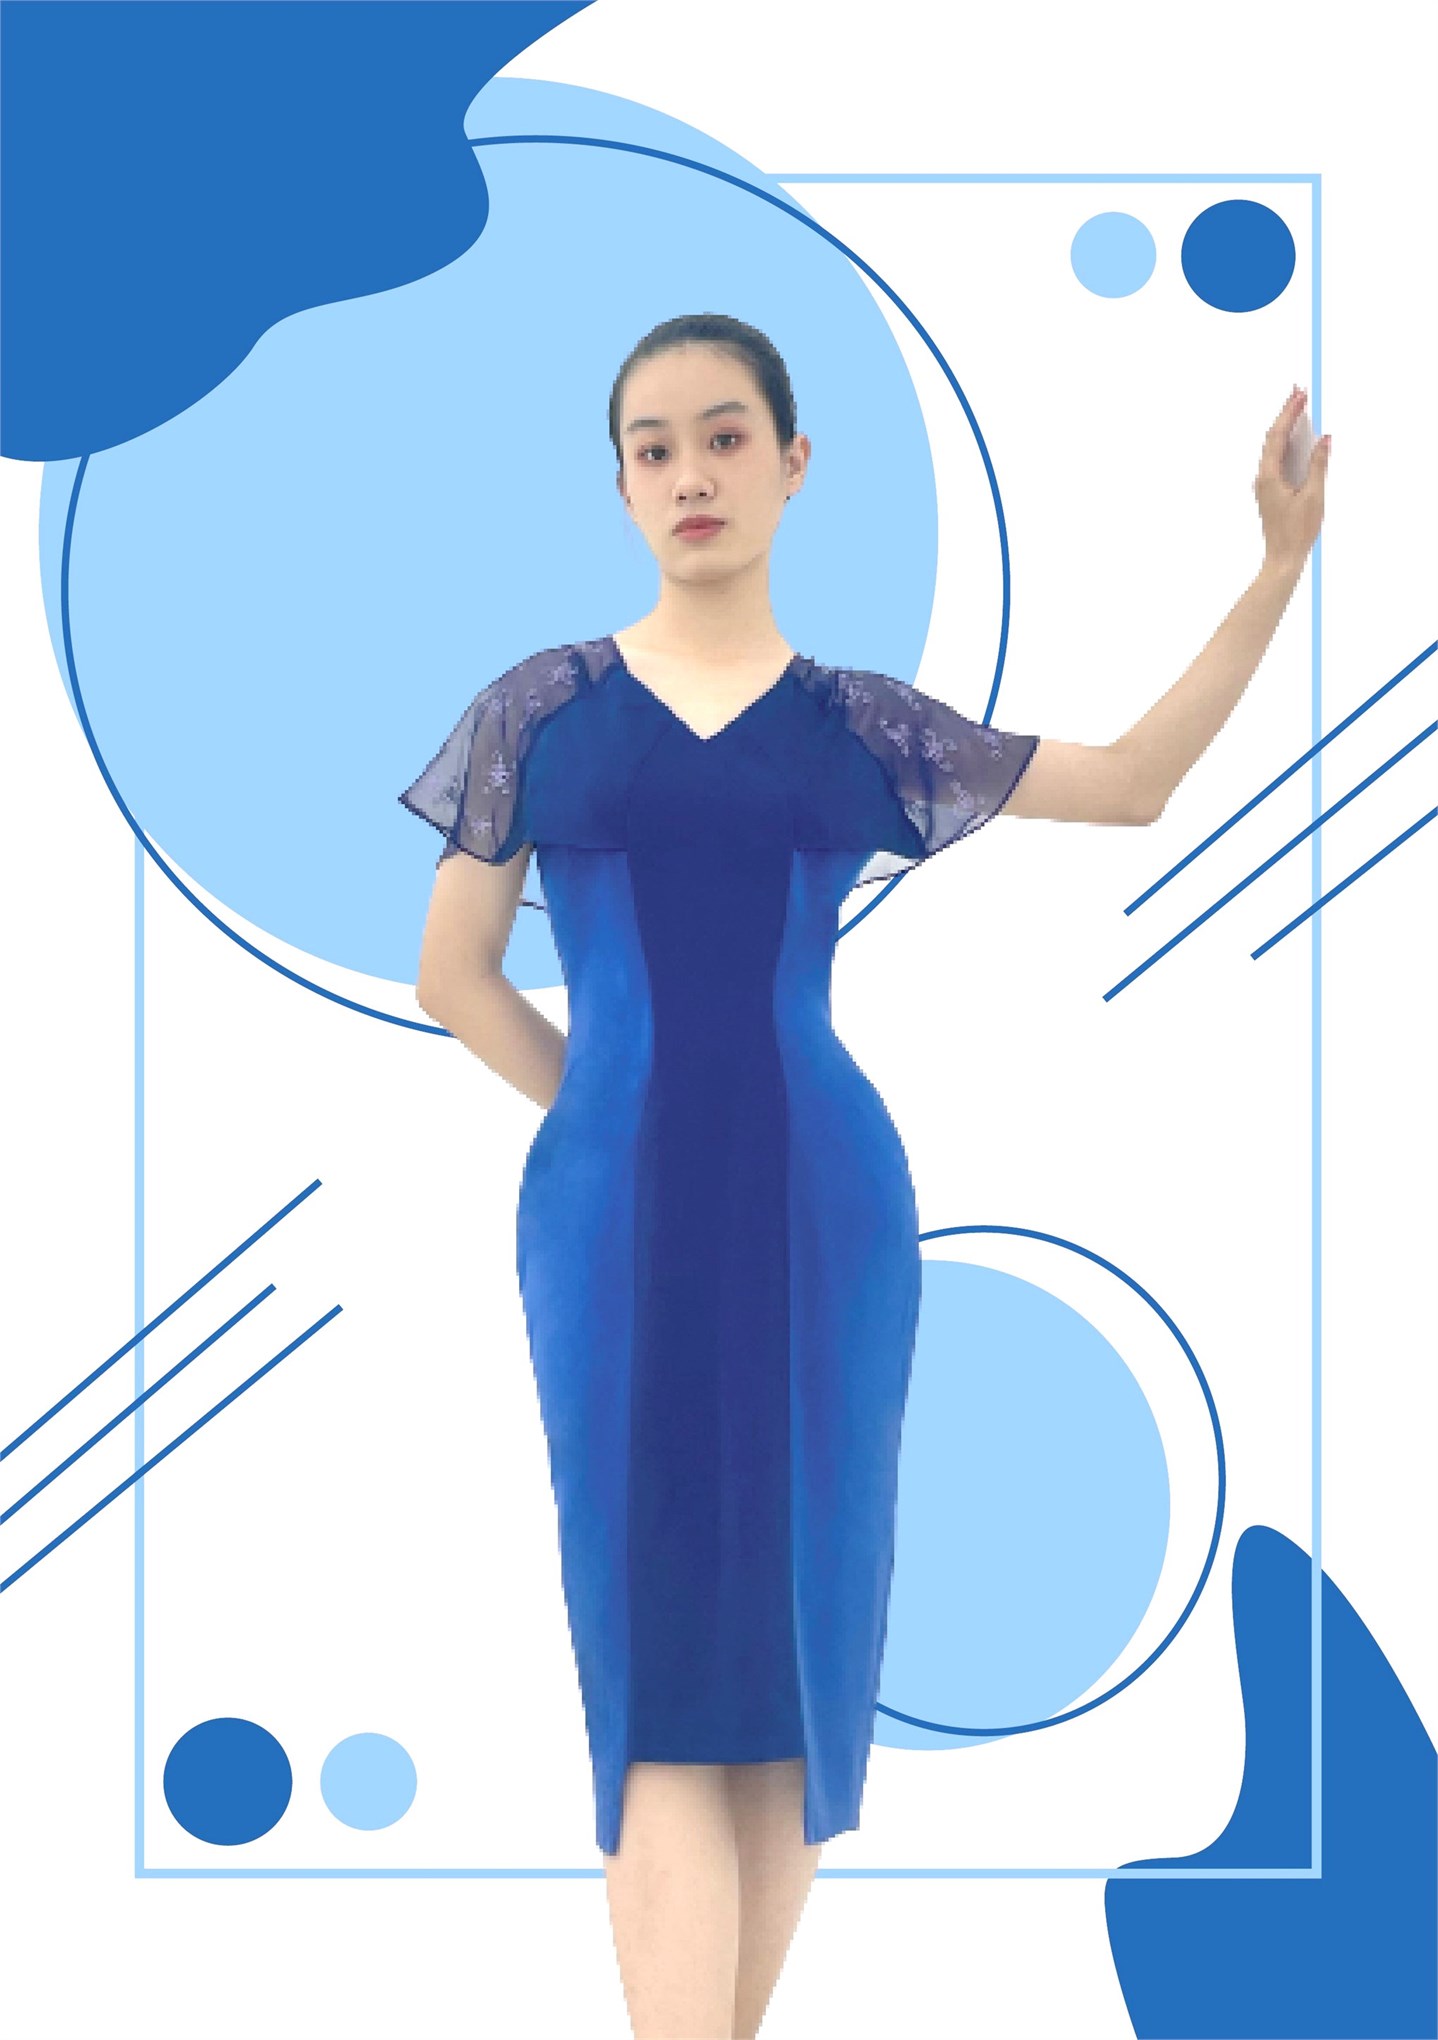 Nghiệm thu đề tài NCKH cấp Trường: “Nghiên cứu thiết kế trang phục hiện đại ứng dụng giá trị thẩm mỹ trong nghệ thuật tạo hình dân gian Việt Nam”